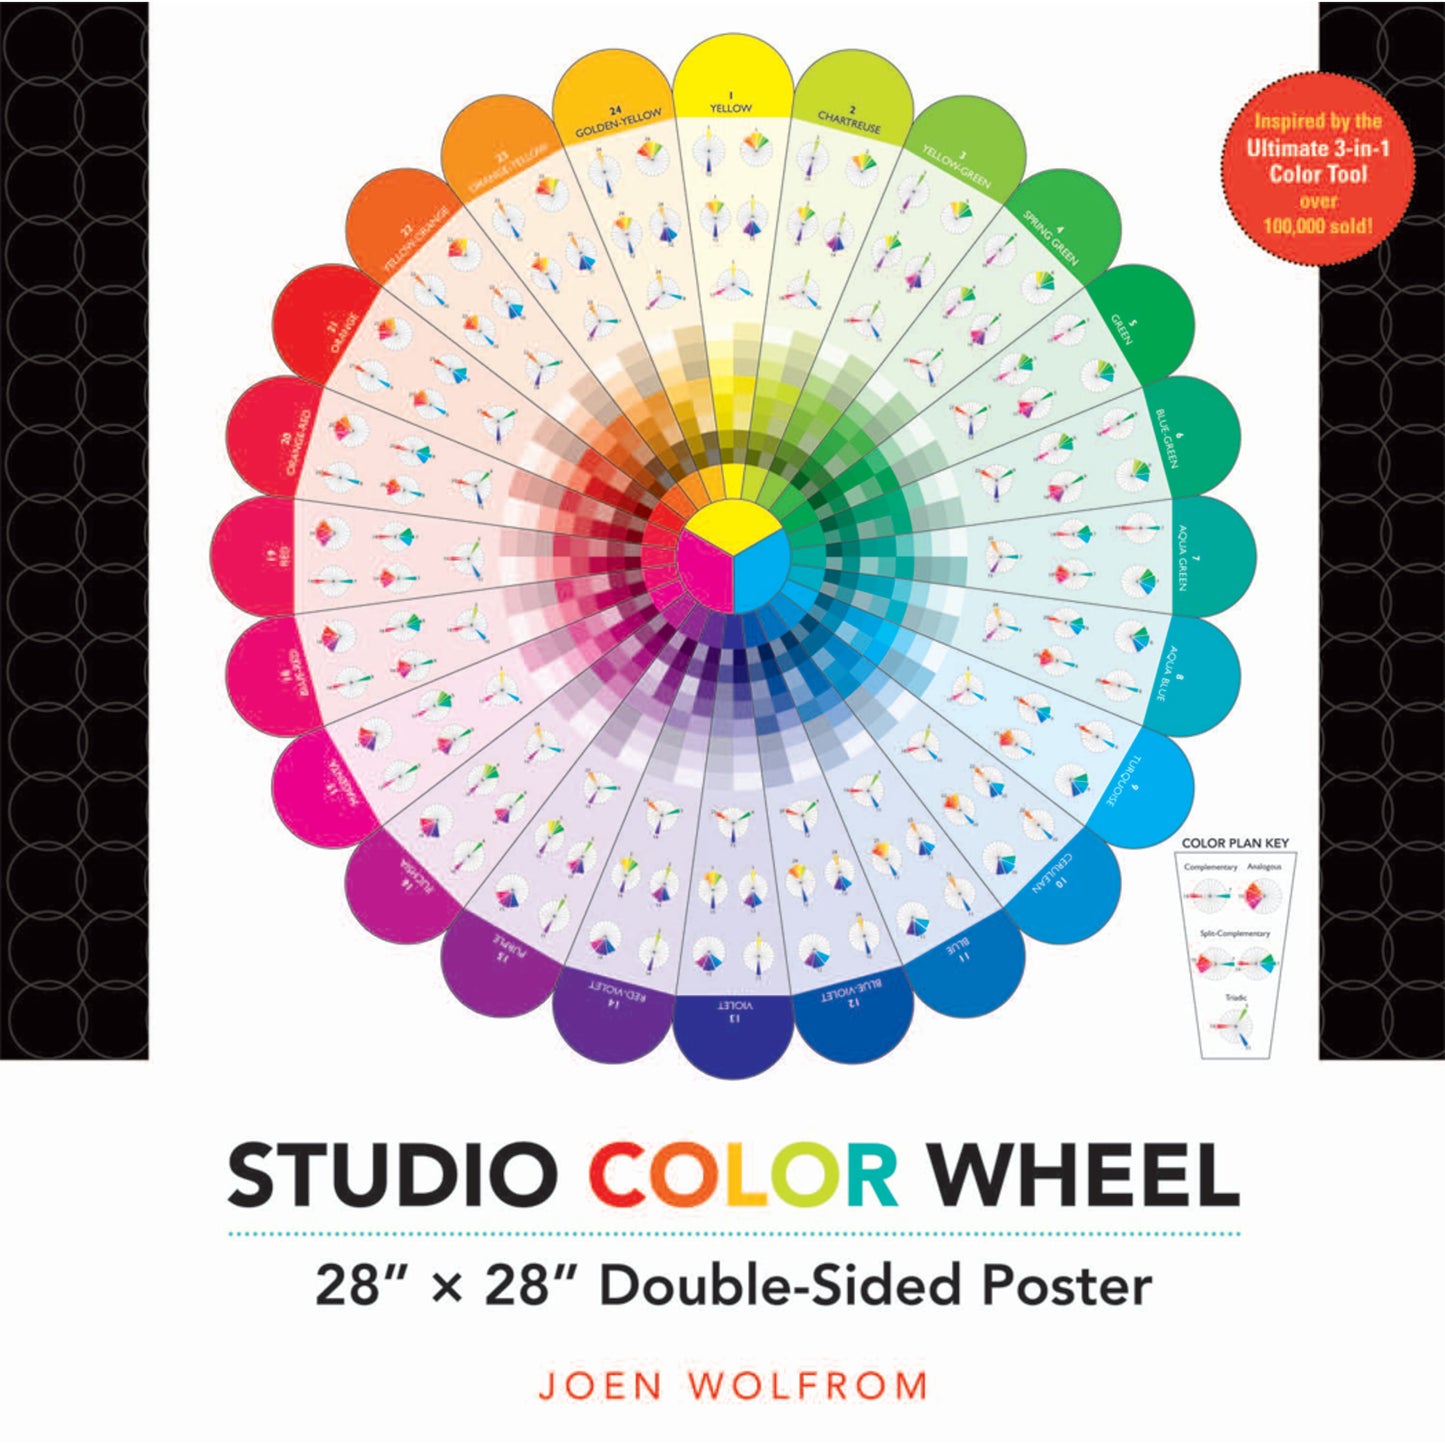 Studio color wheel